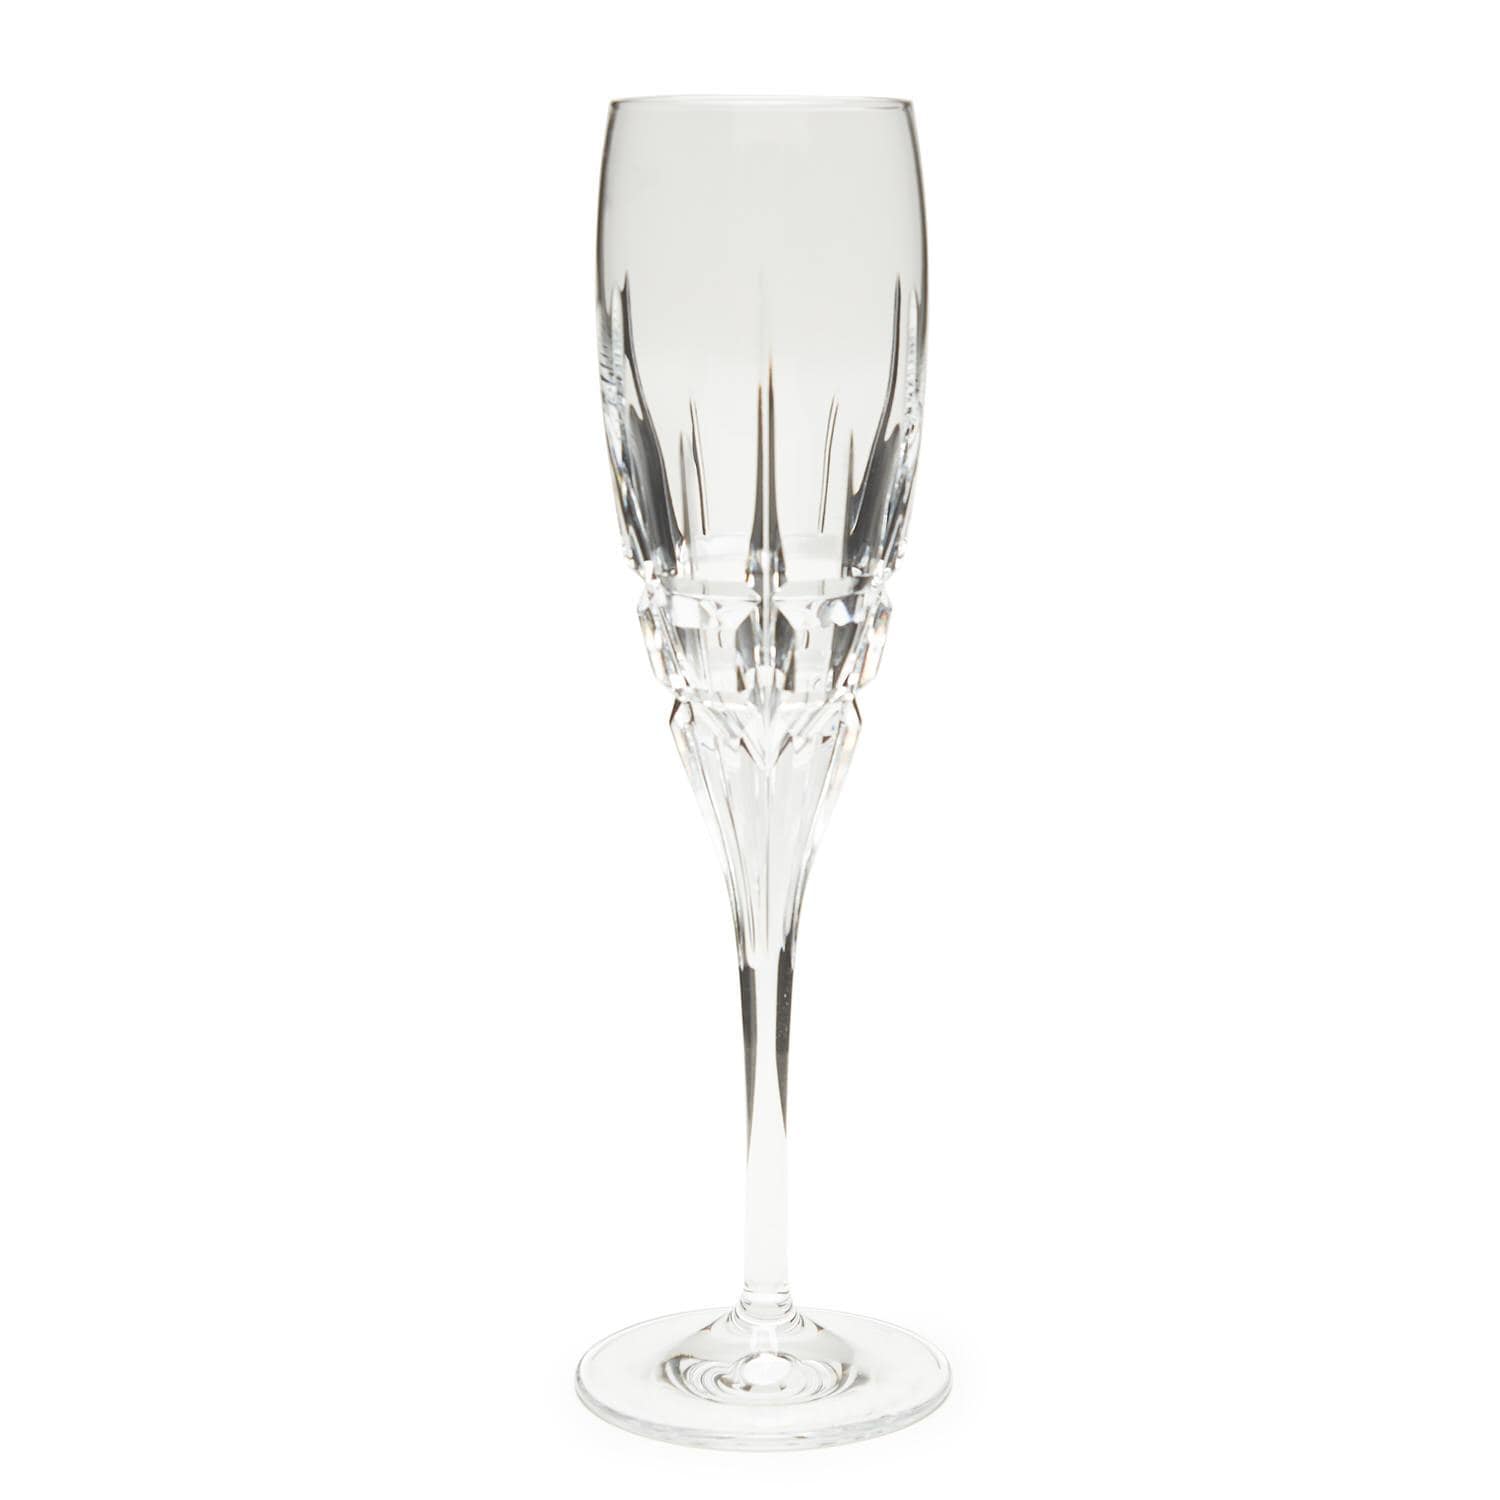 دا فينشي كريستال كارارا الشمبانيا المزامير طقم من 6 - 25636020006